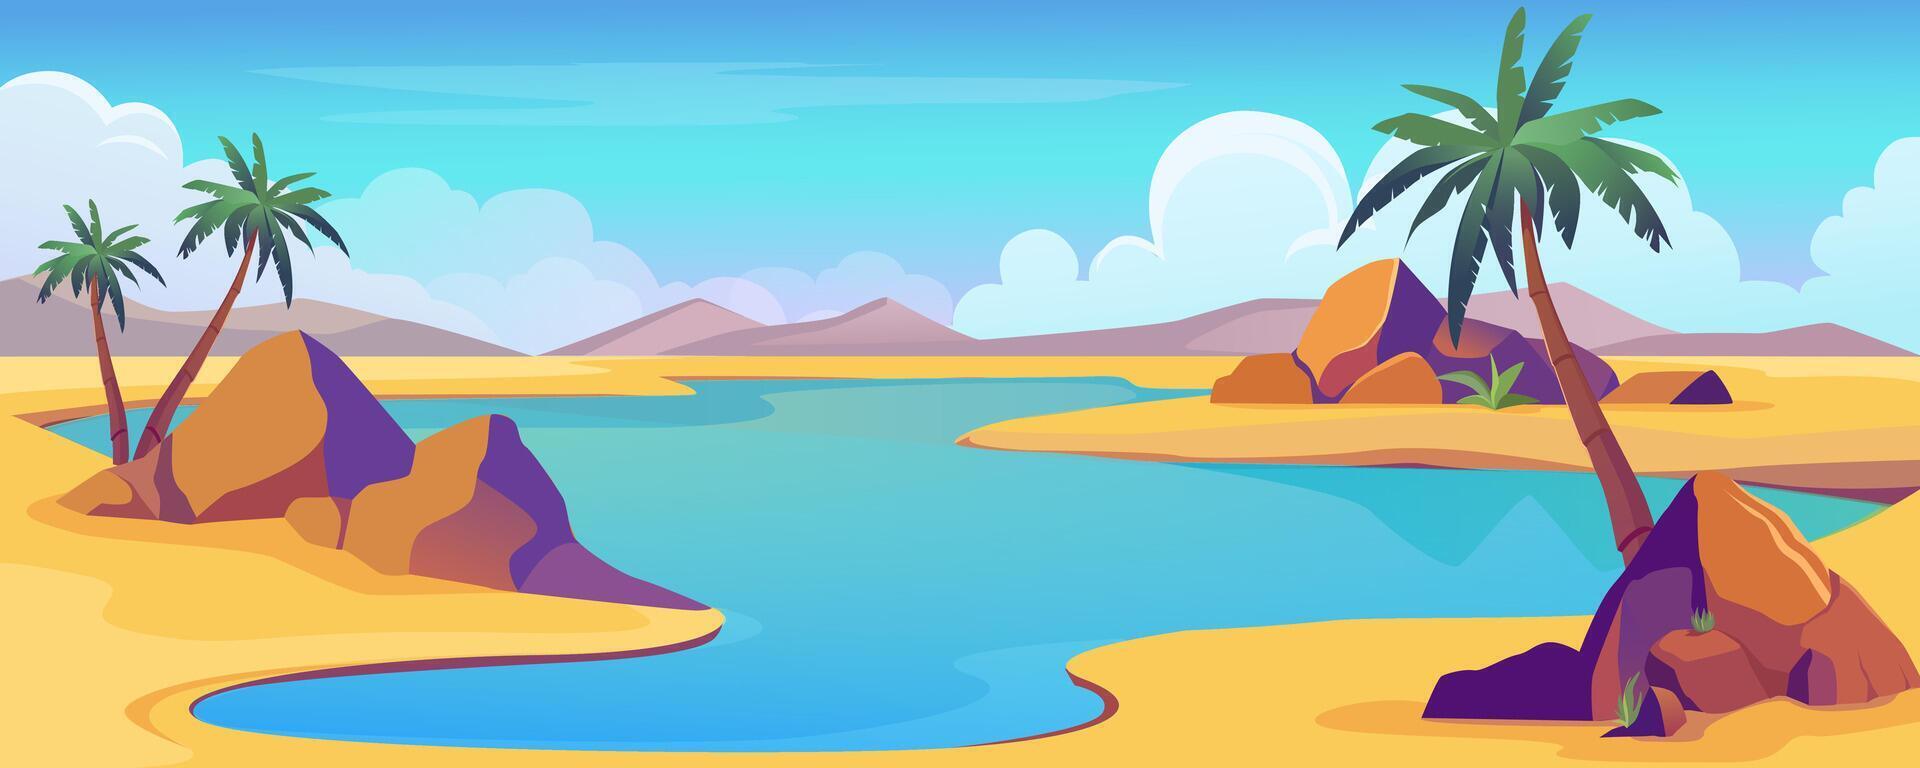 oas se i öken- bakgrund baner i tecknad serie design. torr sand Plats med sanddyner och kullar, blå vatten sjö med handflatan träd och stenar, moln horisont på dag solig himmel. tecknad serie illustration vektor